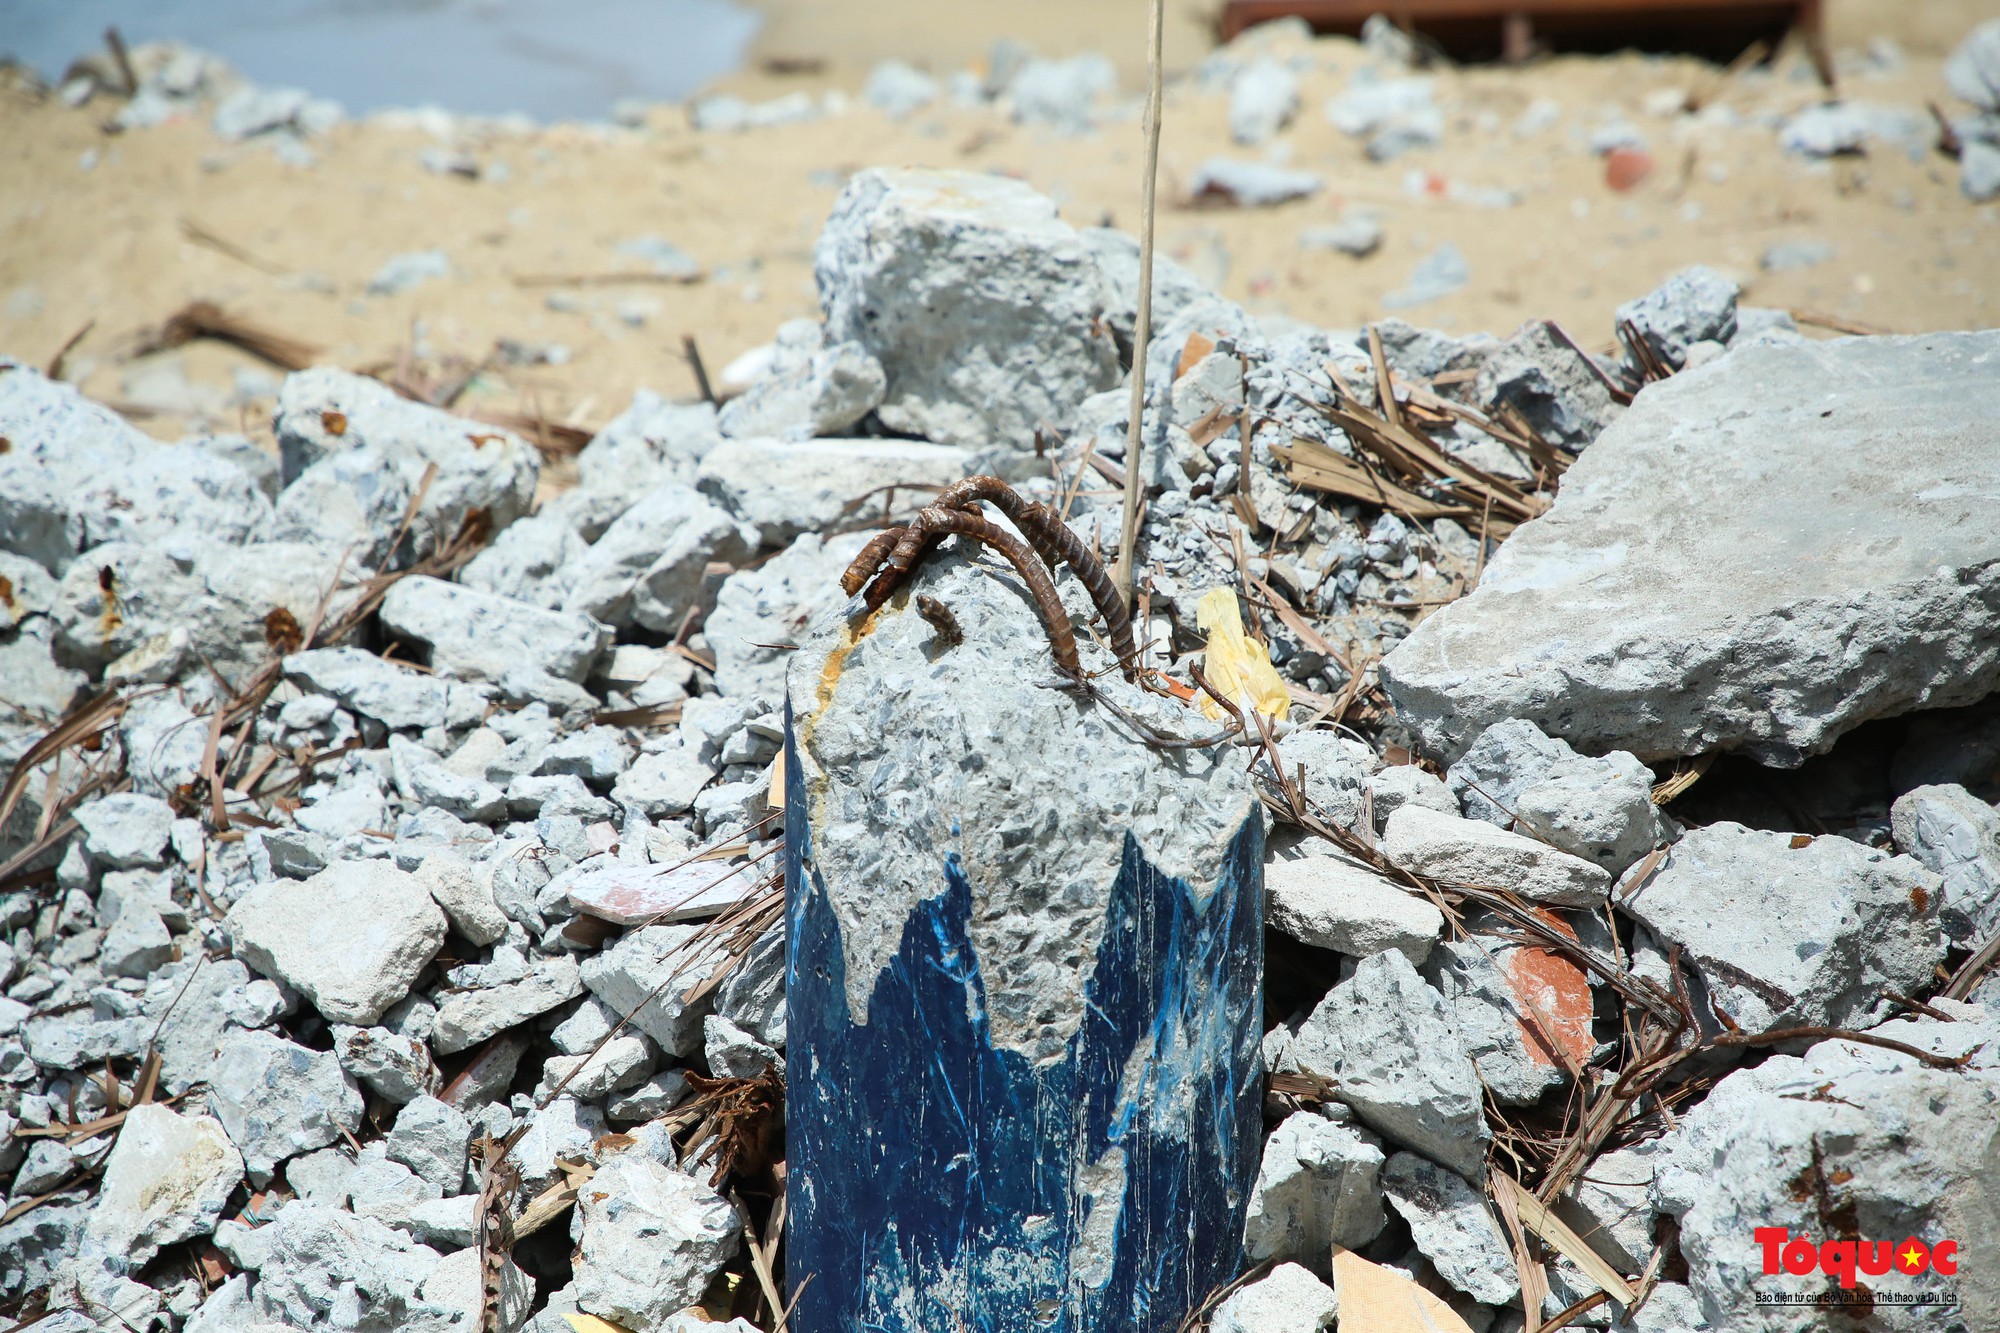 Hình ảnh nhà hàng xây trái phép trên bán đảo Sơn Trà bị tháo dỡ - Ảnh 4.